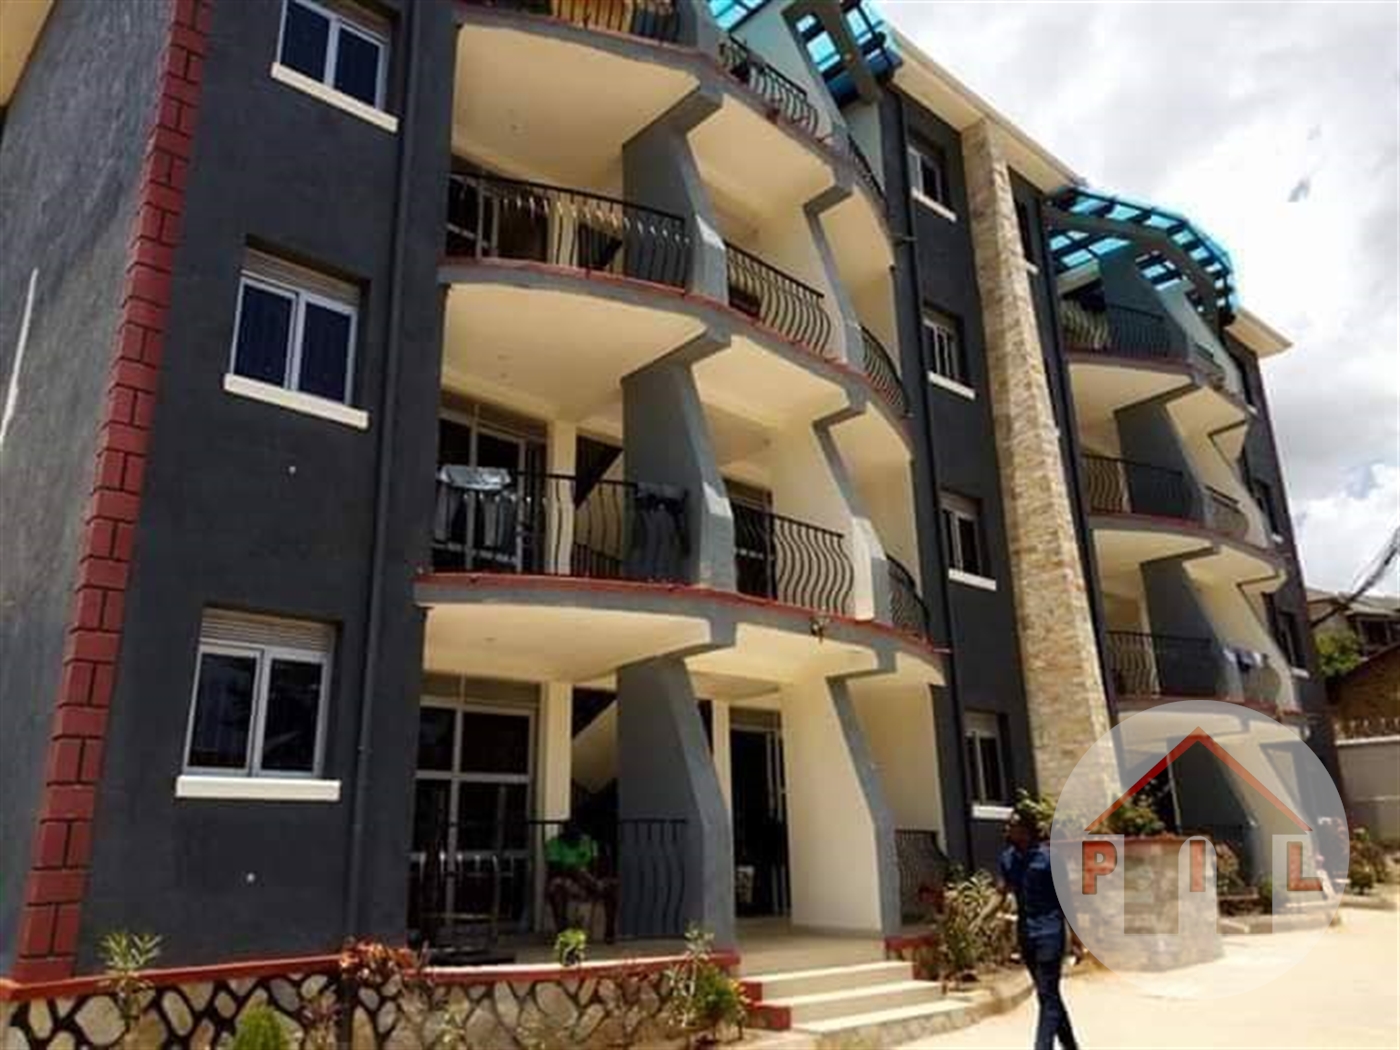 Apartment block for sale in Namugongo Wakiso